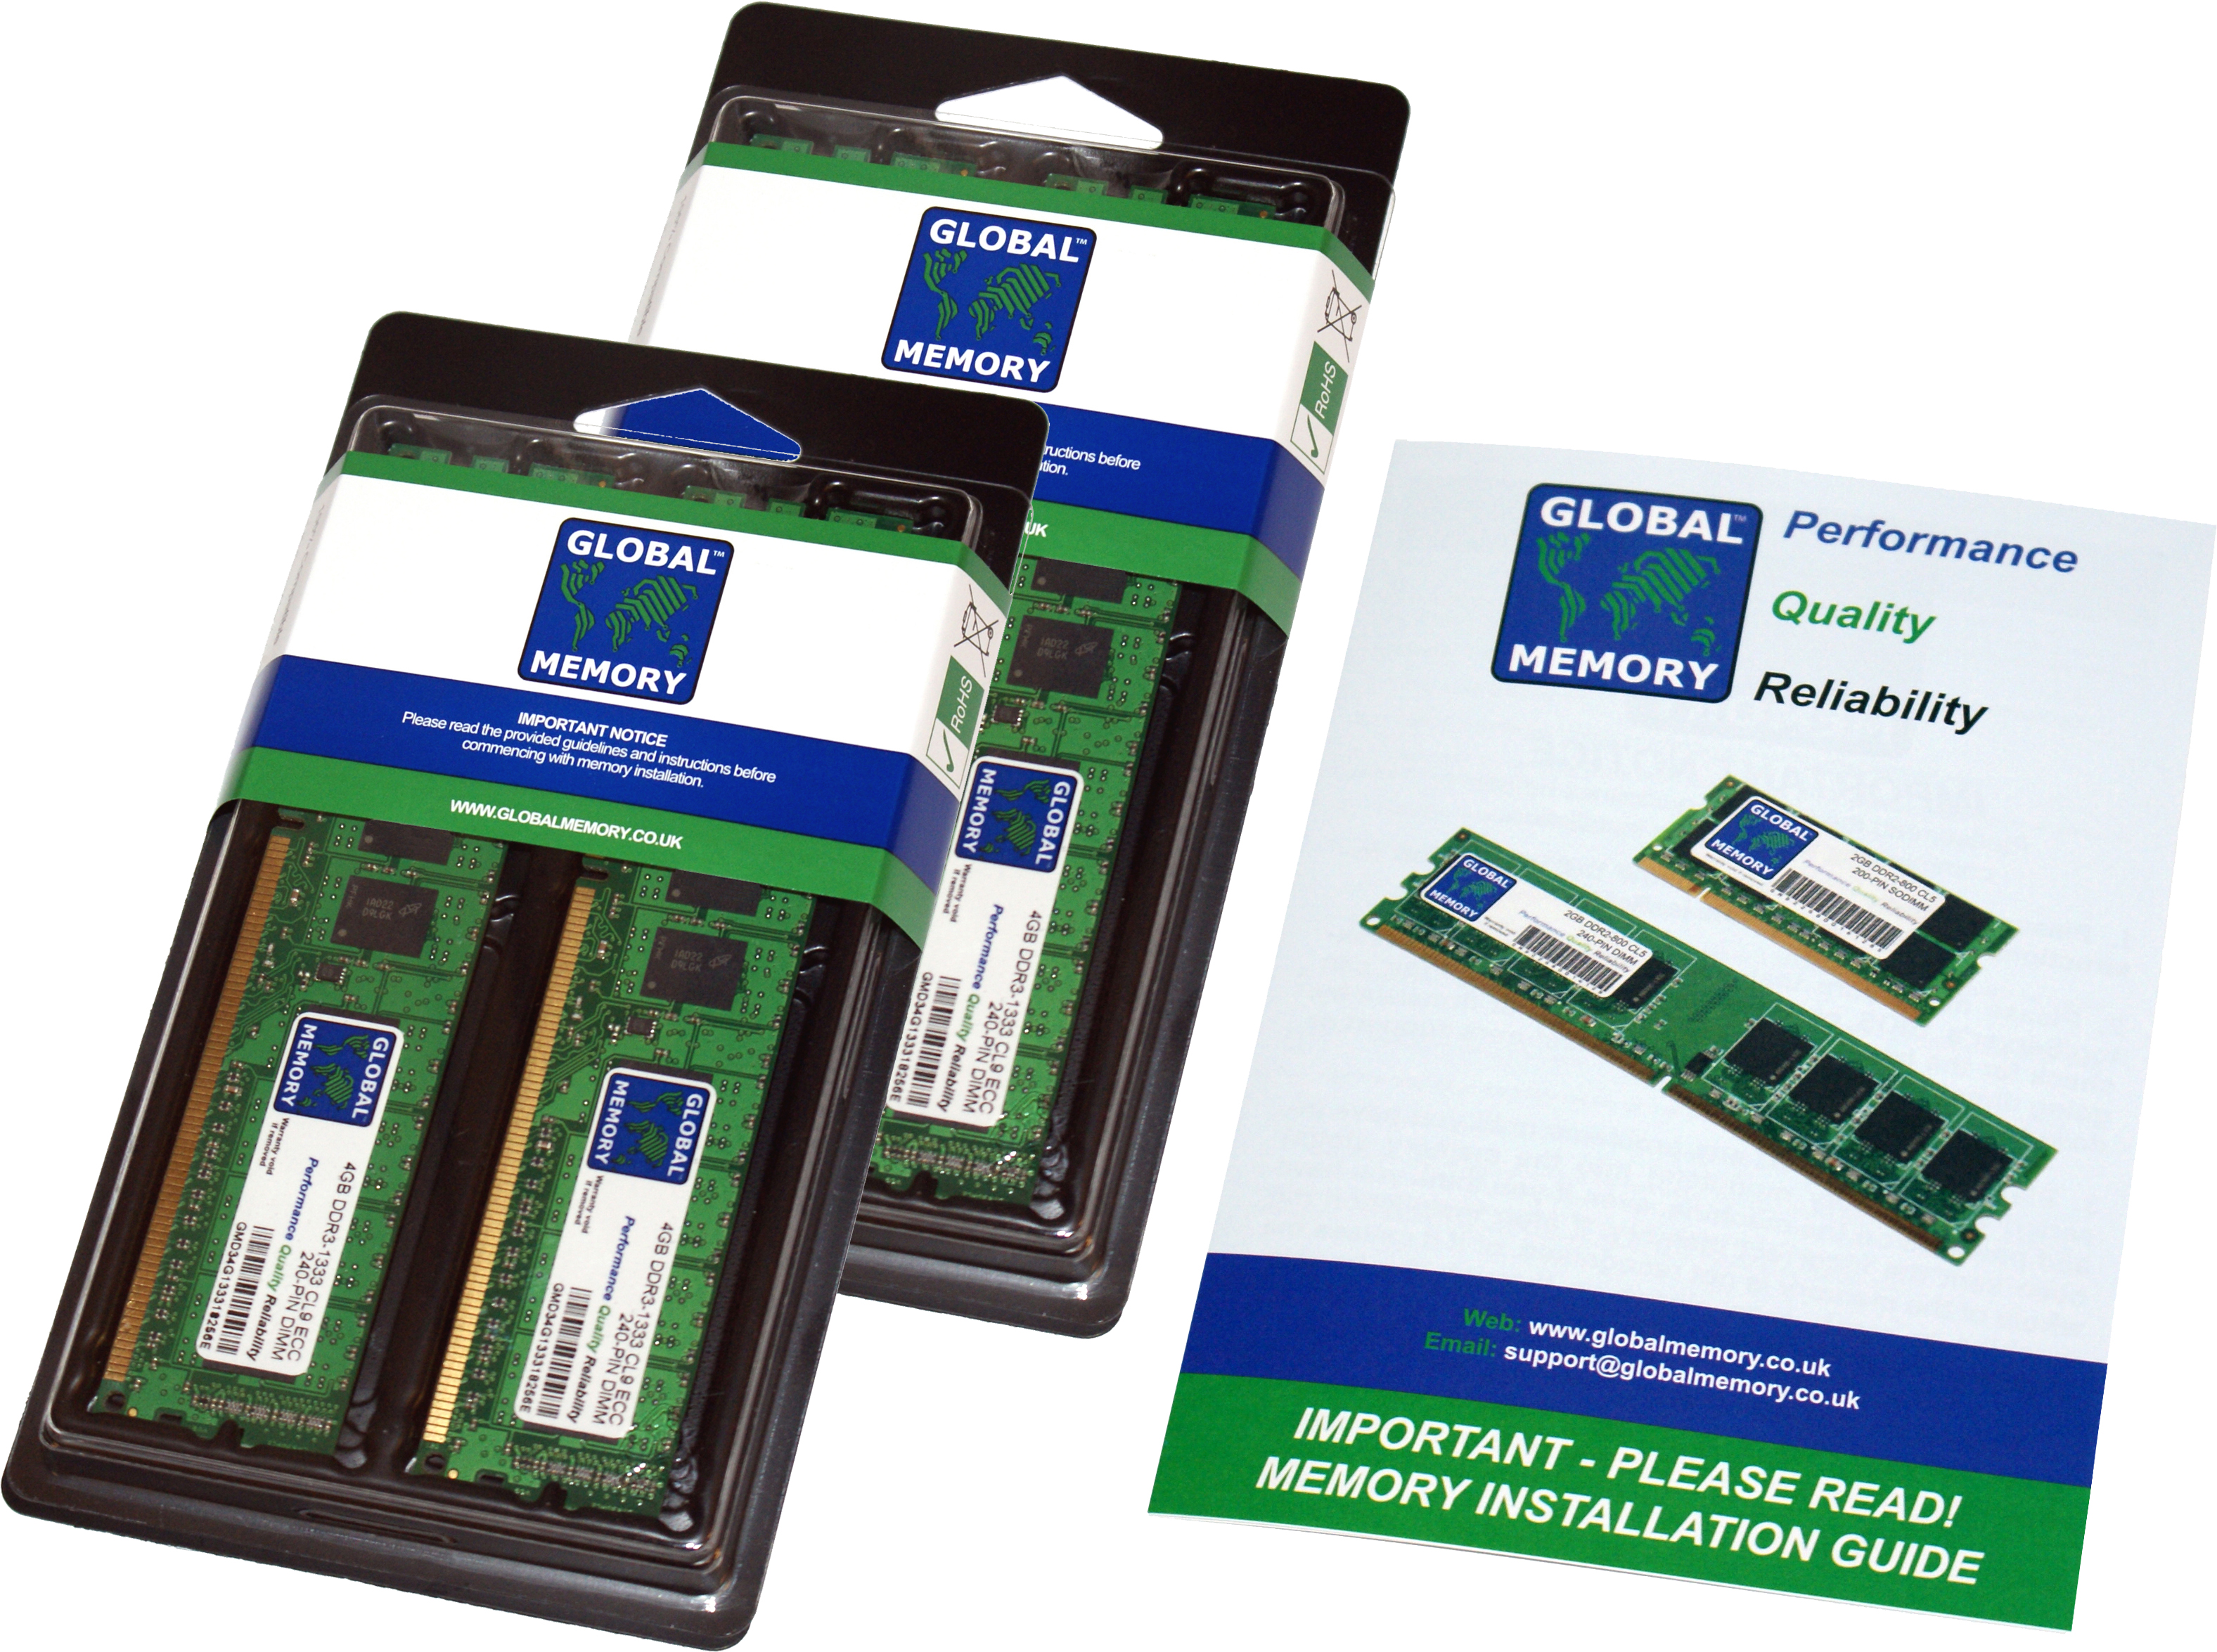 64GB (4 x 16GB) DDR4 2400MHz PC4-19200 288-PIN DIMM MEMORY RAM KIT FOR HEWLETT-PACKARD PC DESKTOPS